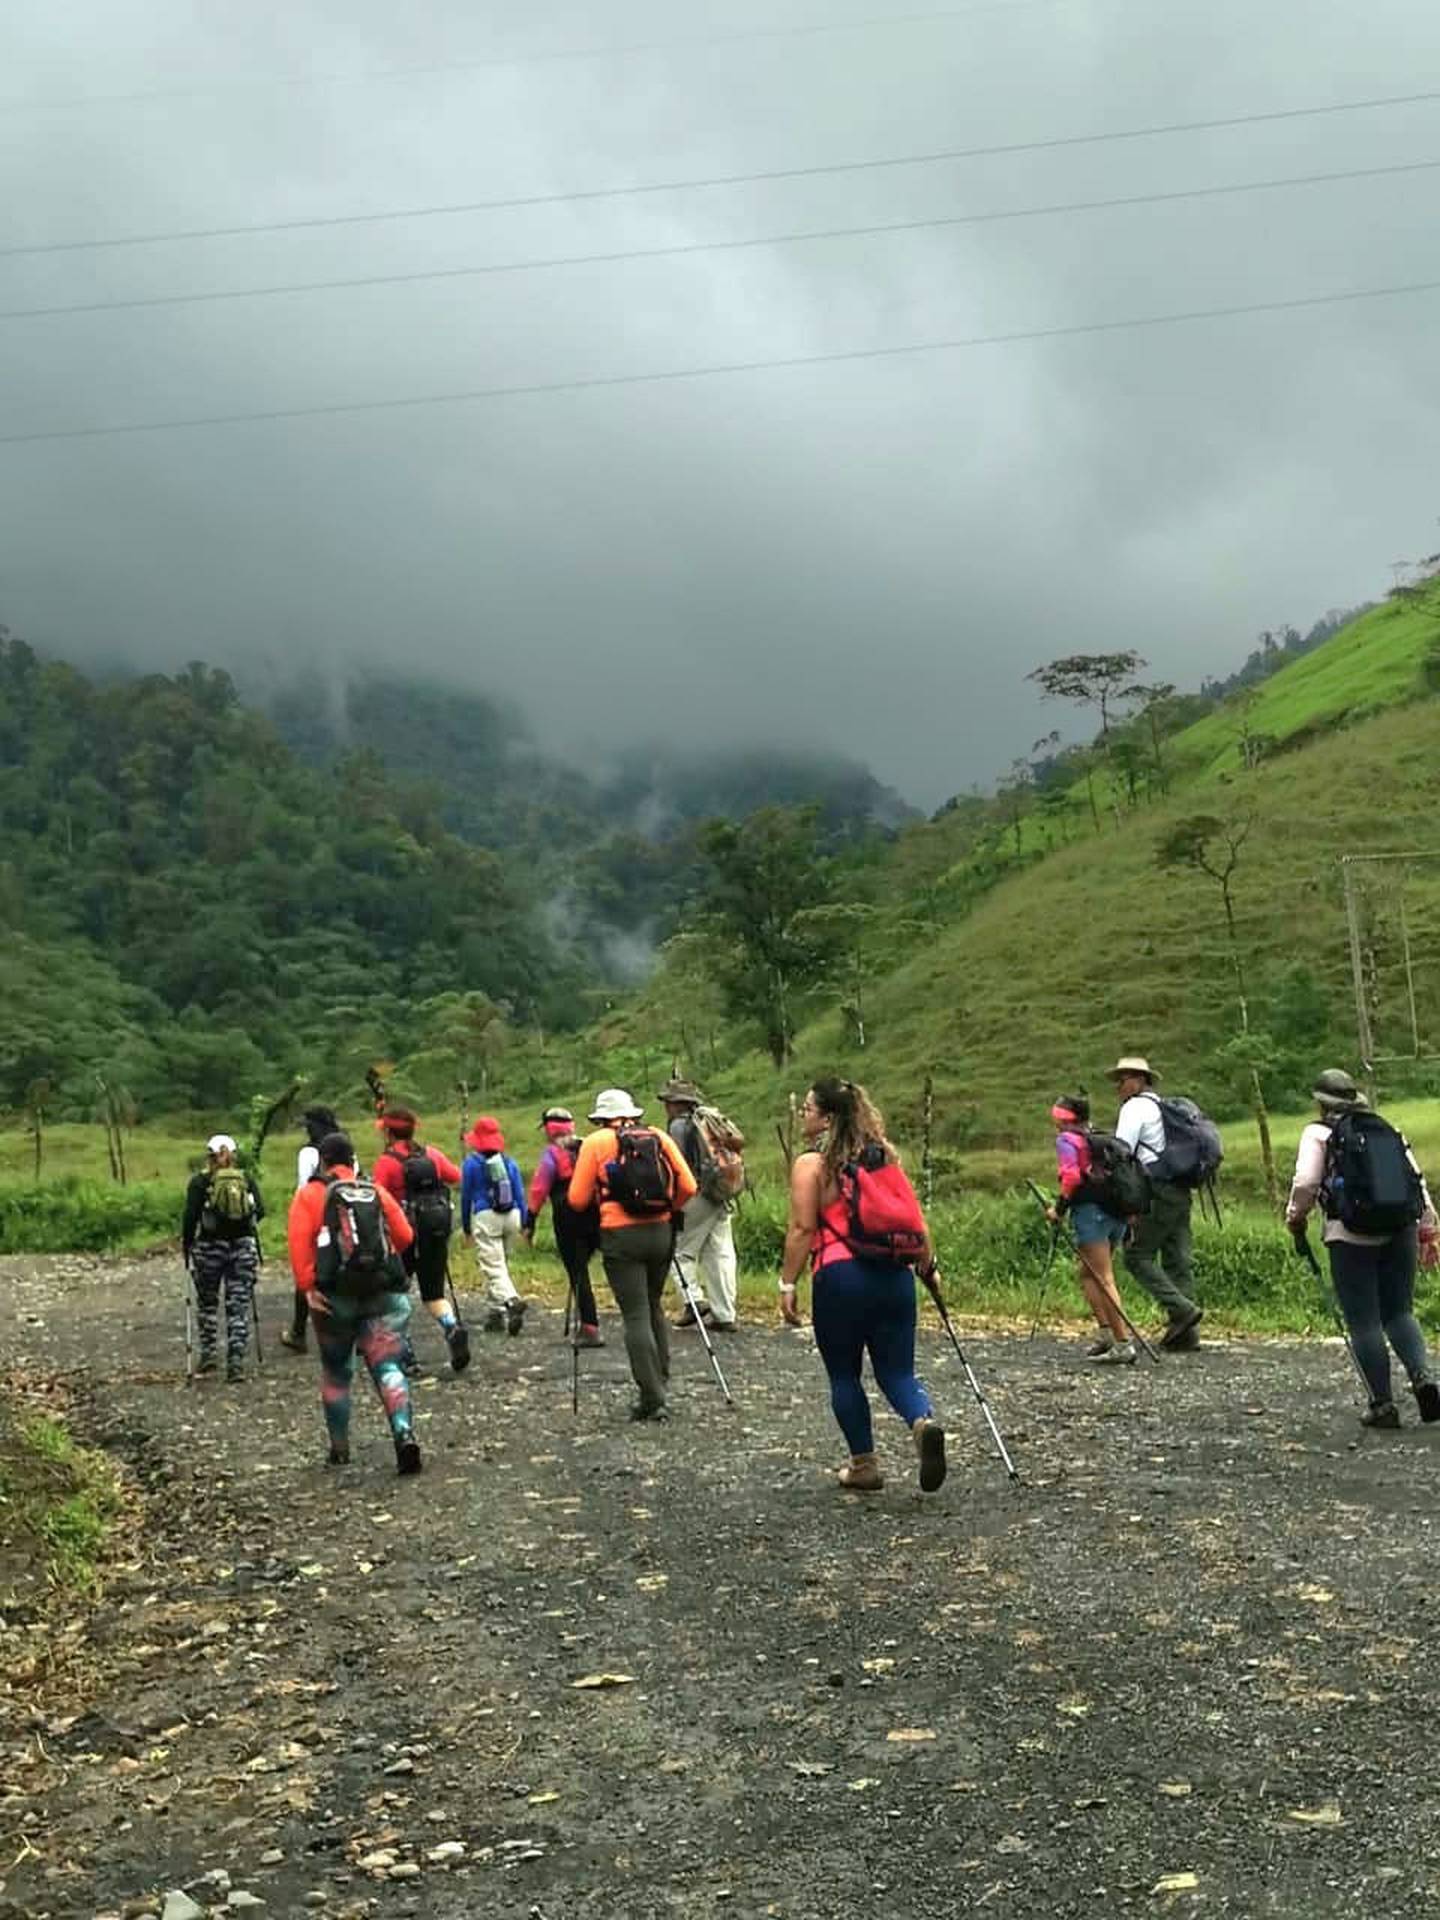 El Guarco Hiking Team organiza un recorrido por Tapantí y el Humo de Pejibaye. Facebook.